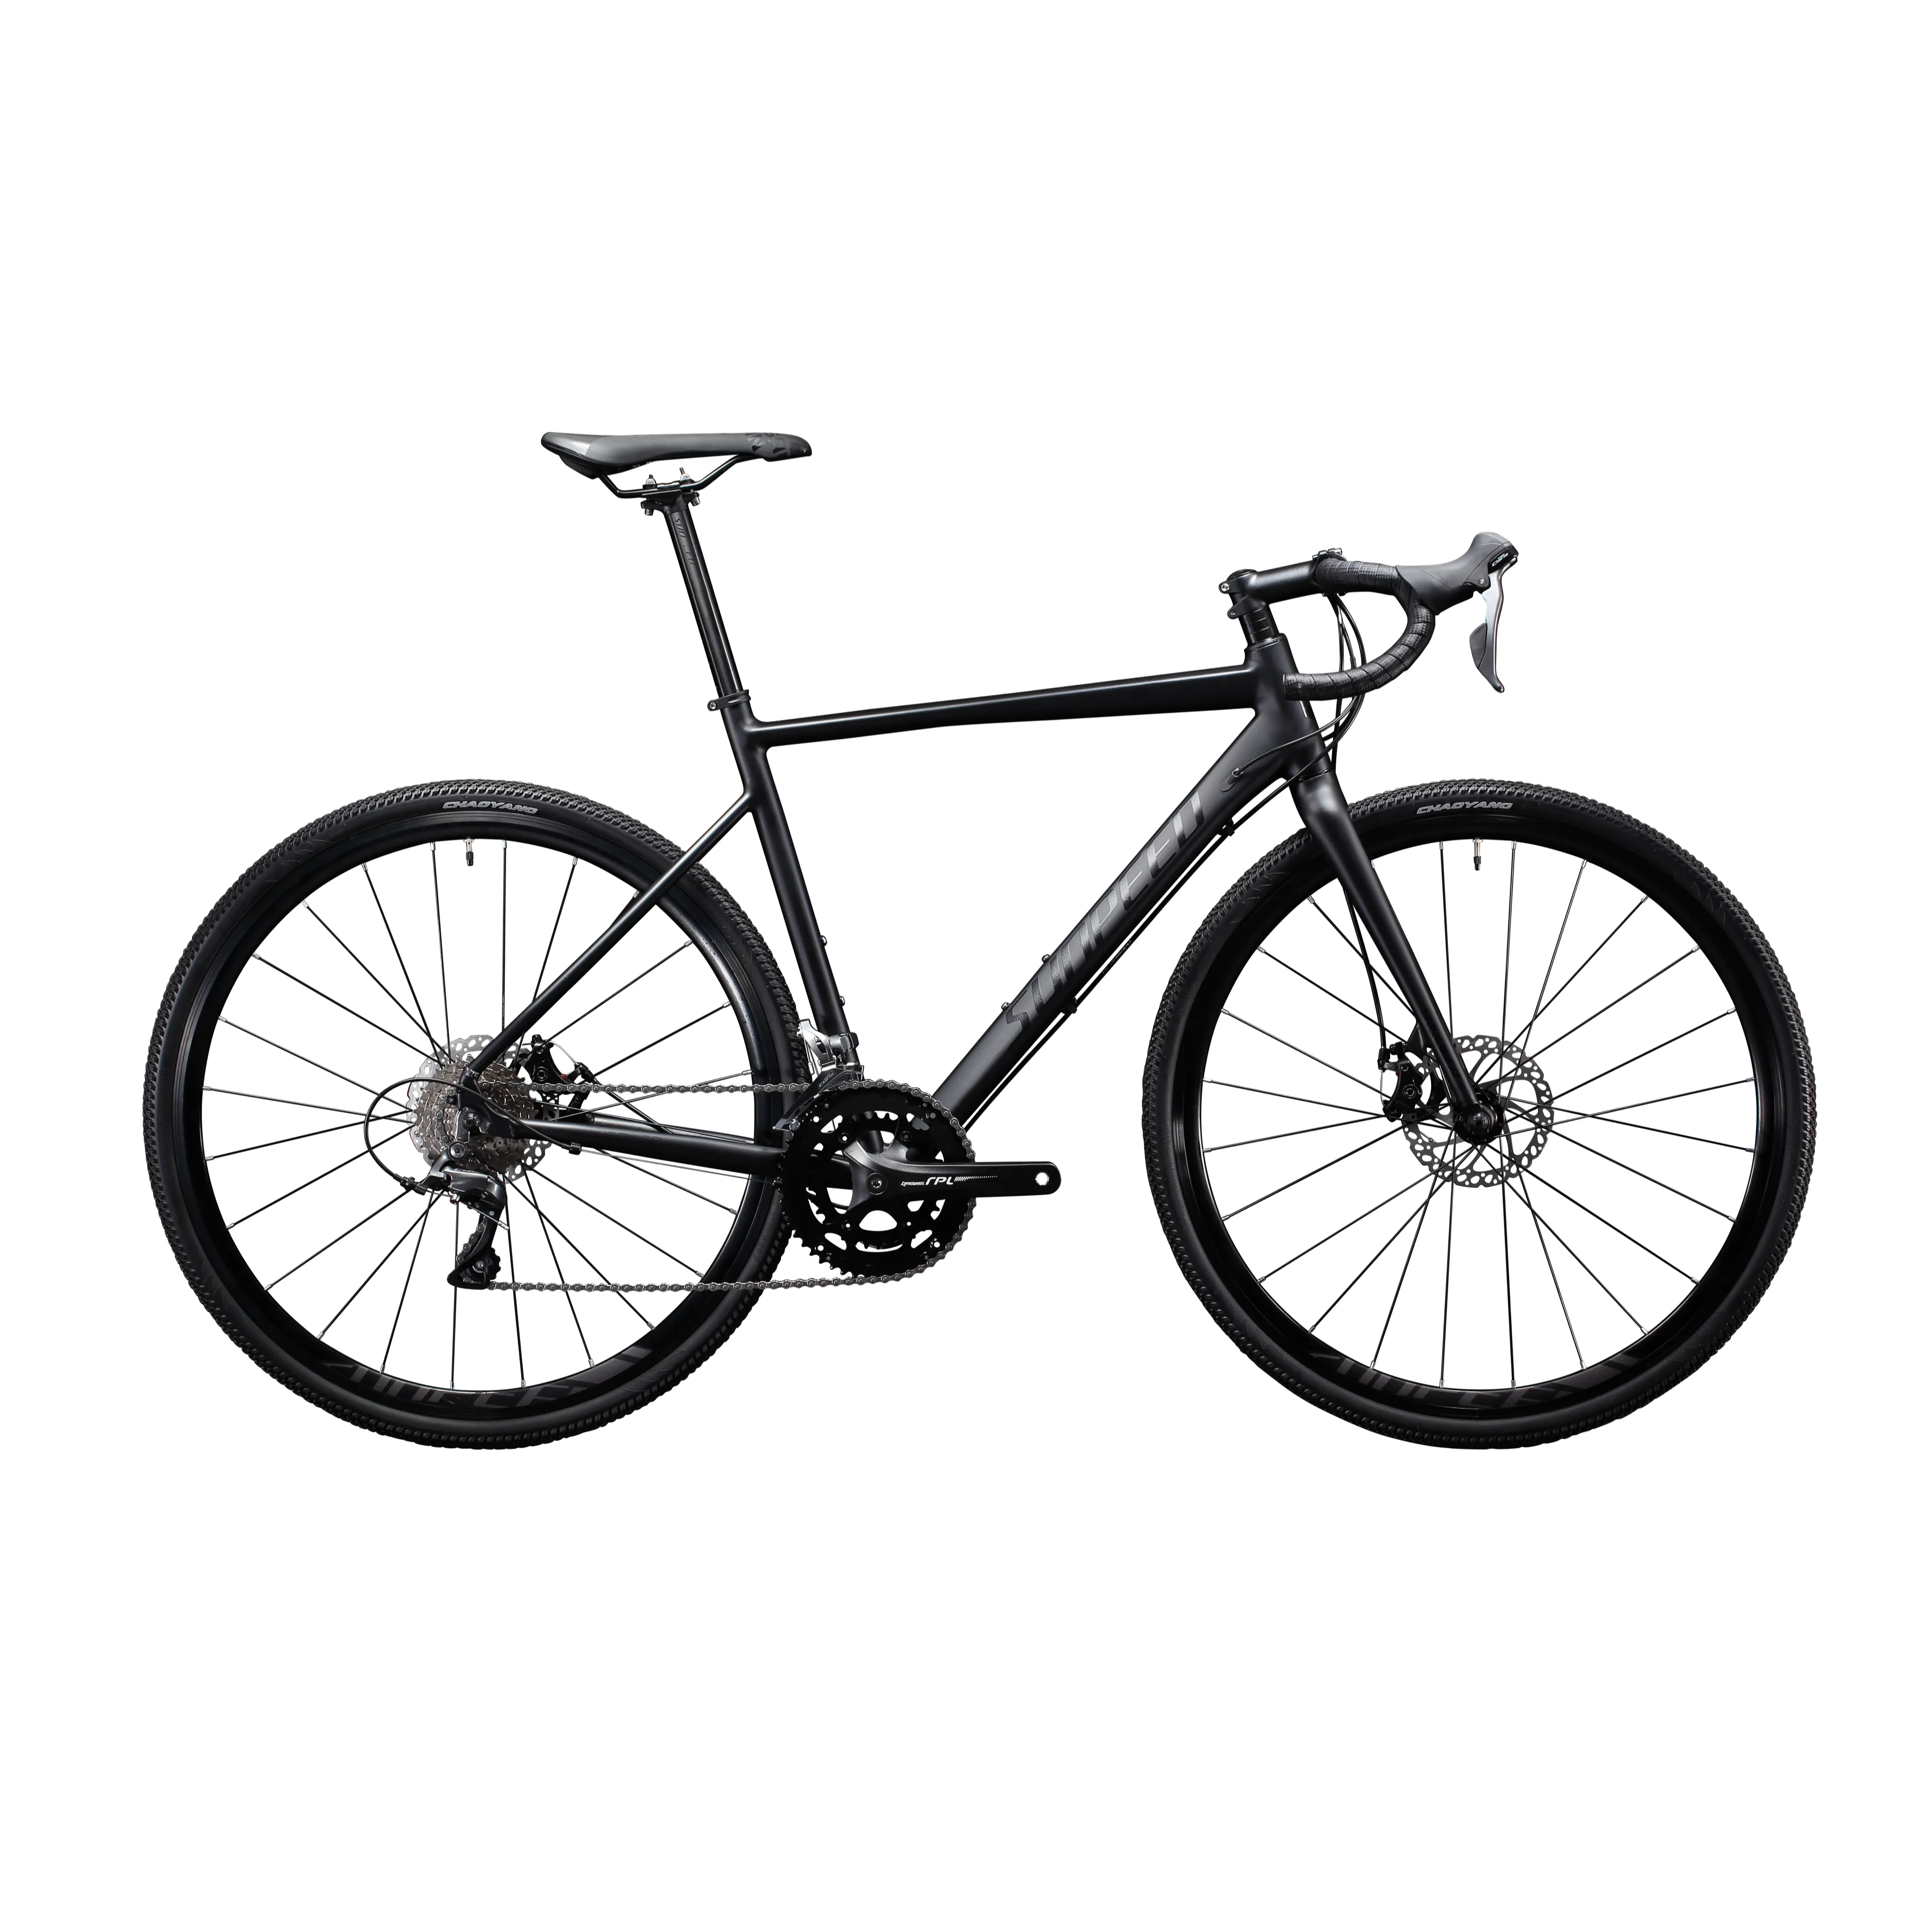 SUNPEED yol bisikleti off road ultra hafif taşınabilir değişken 18 hız alüminyum disk fren 700c çakıl yol bisiklet